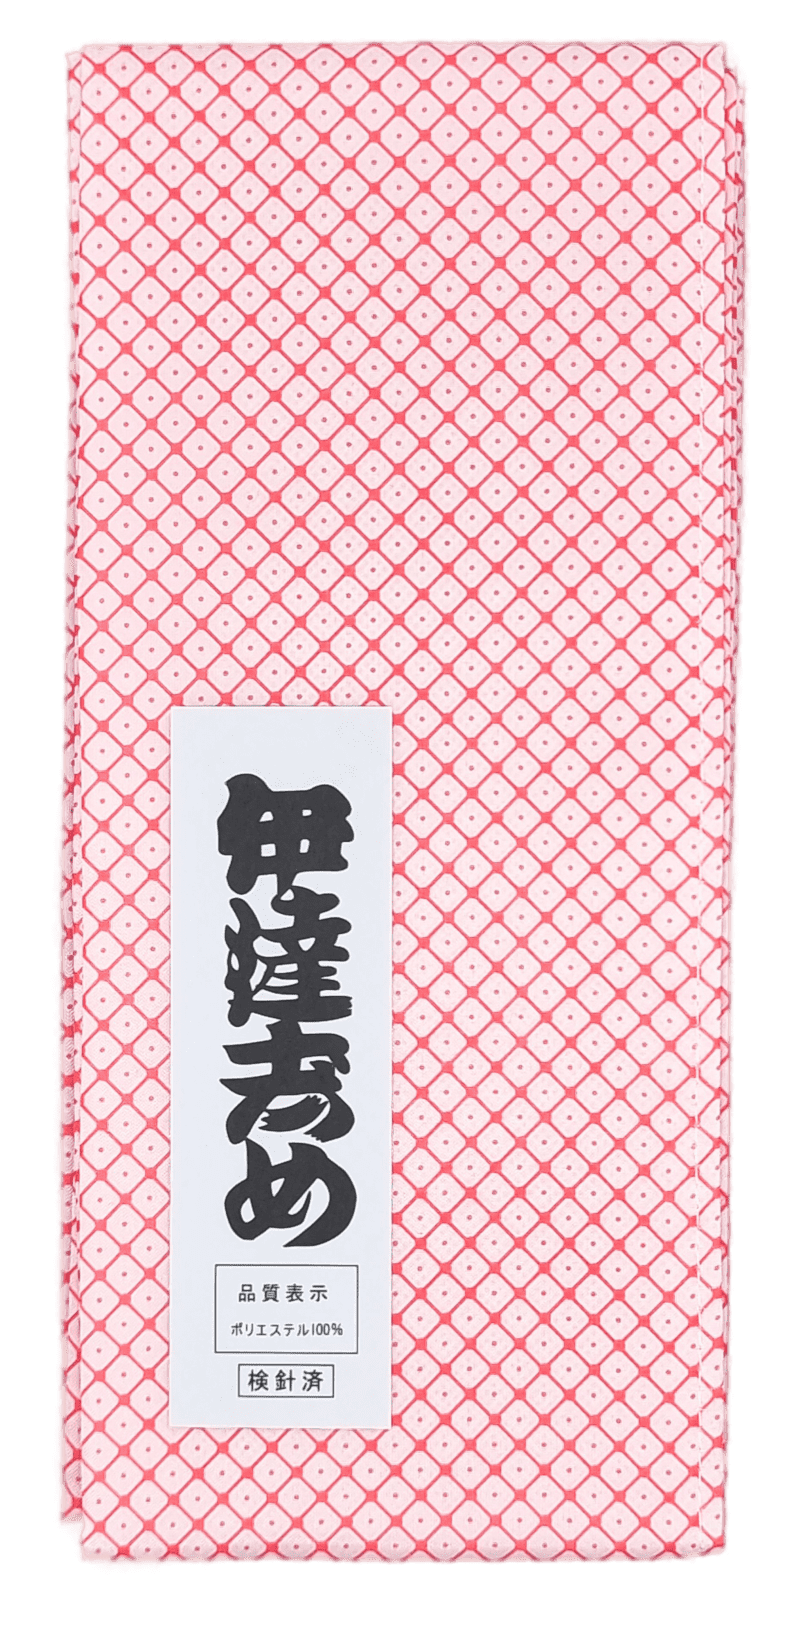 Datejime Kanoko mit Schriftzeichen